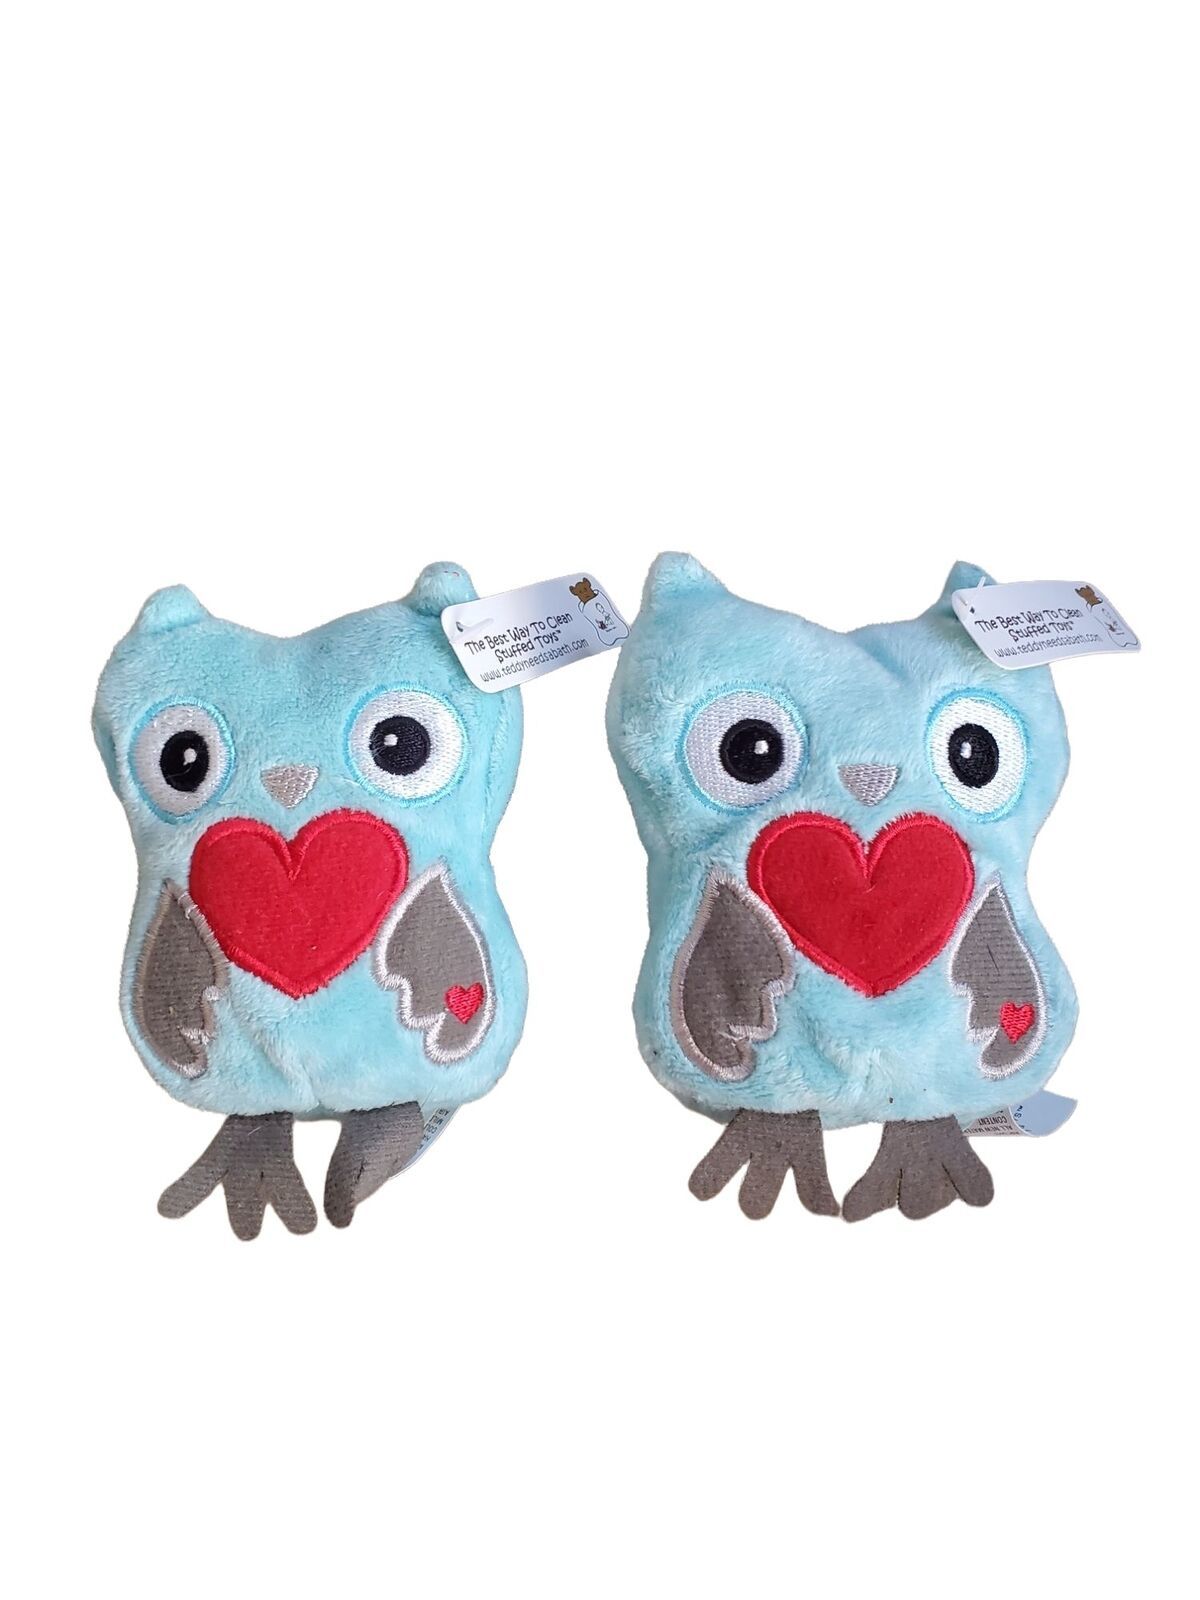 Gund Tweethearts Plush Owls Set O f 2 4 Inch Plush Stuffed Animals Blue Love - £10.11 GBP